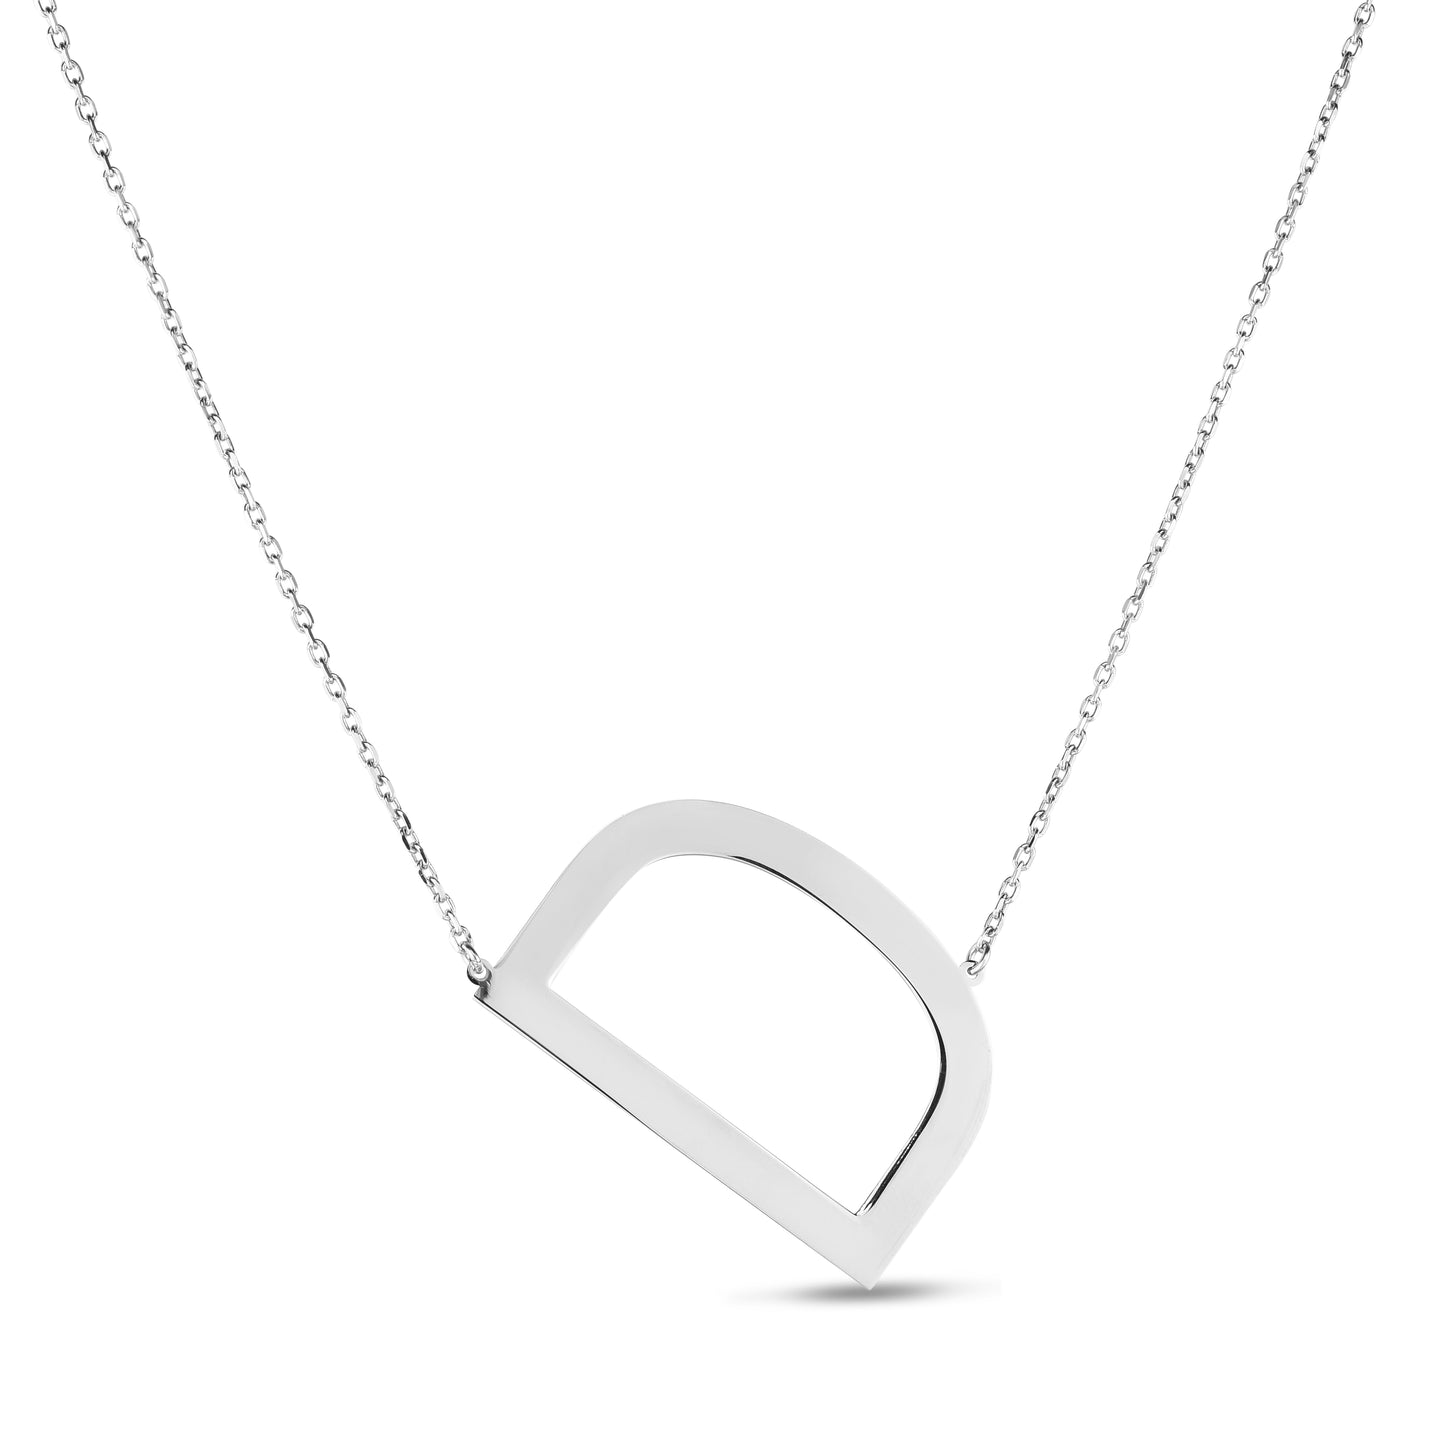 Silver D Letter Necklace